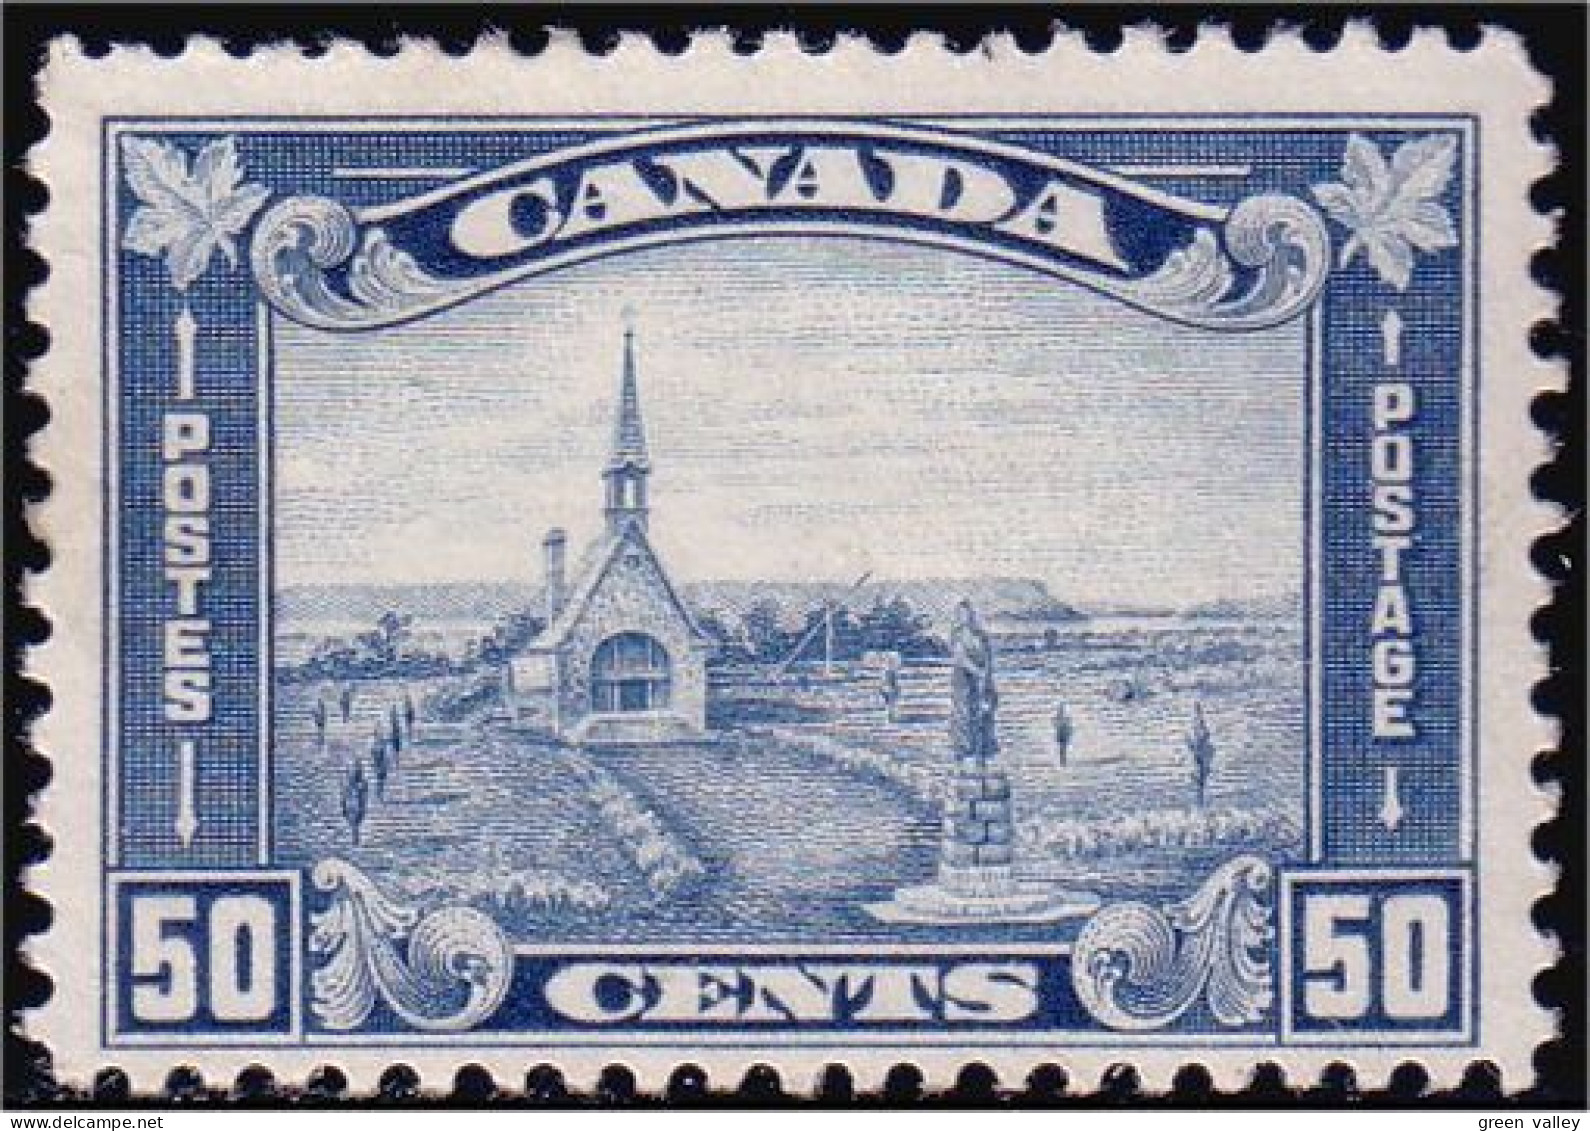 951 Canada 1930 Grand Pré Memorial Church TB VF MH * Neuf #176 CV $300.00 (187) - Neufs